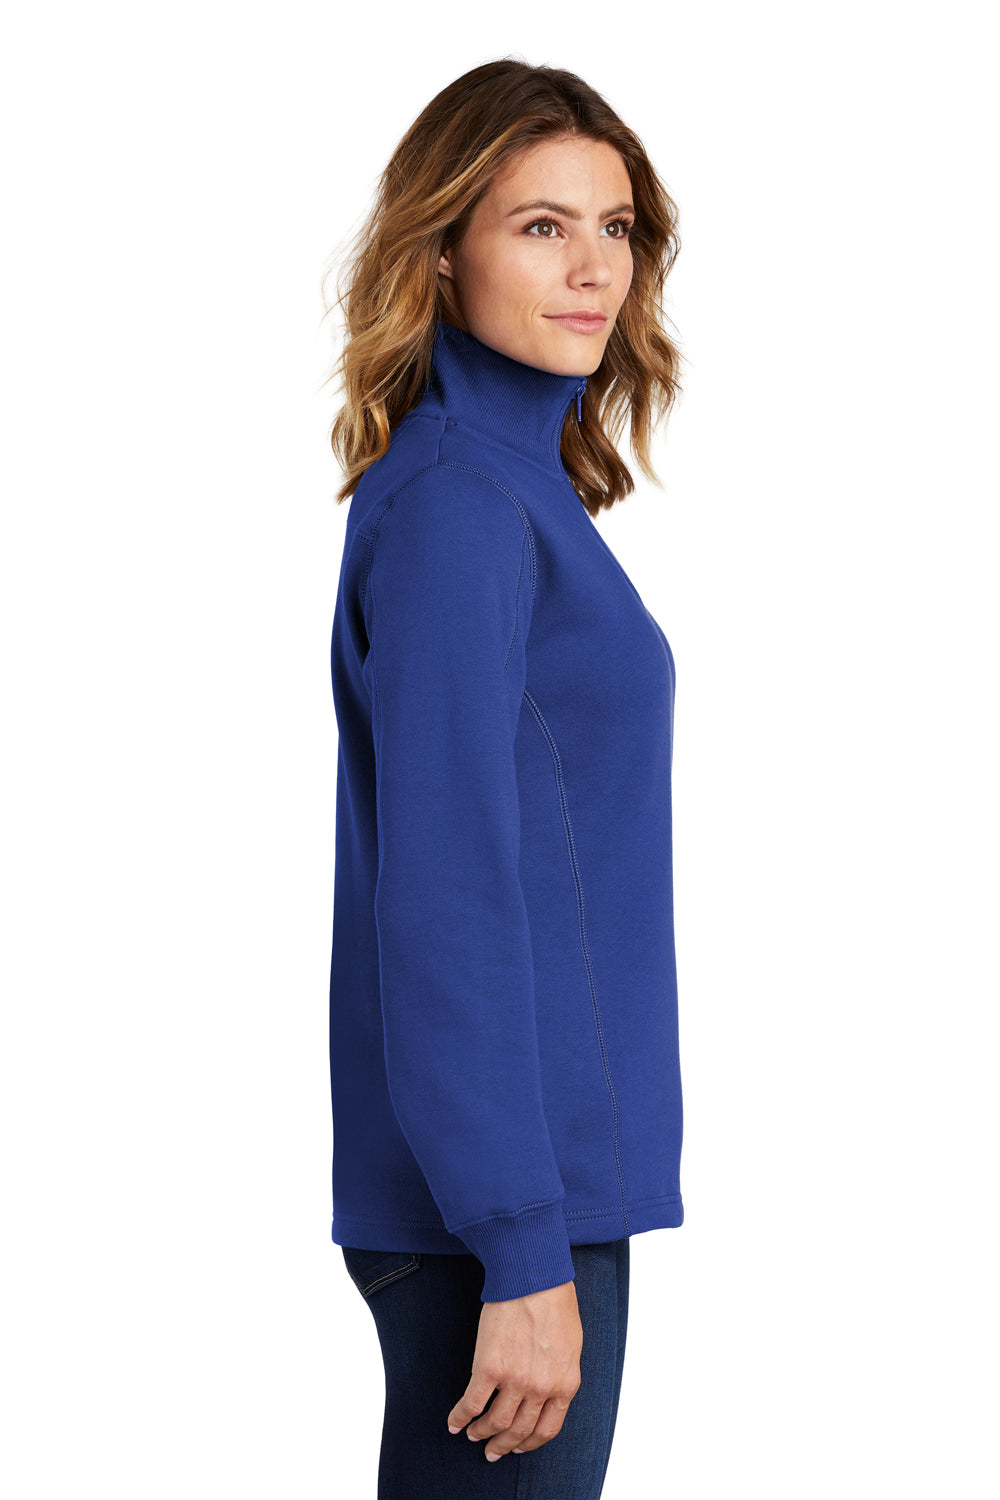 Sport-Tek LST253 Womens Fleece 1/4 Zip Sweatshirt Royal Blue Side